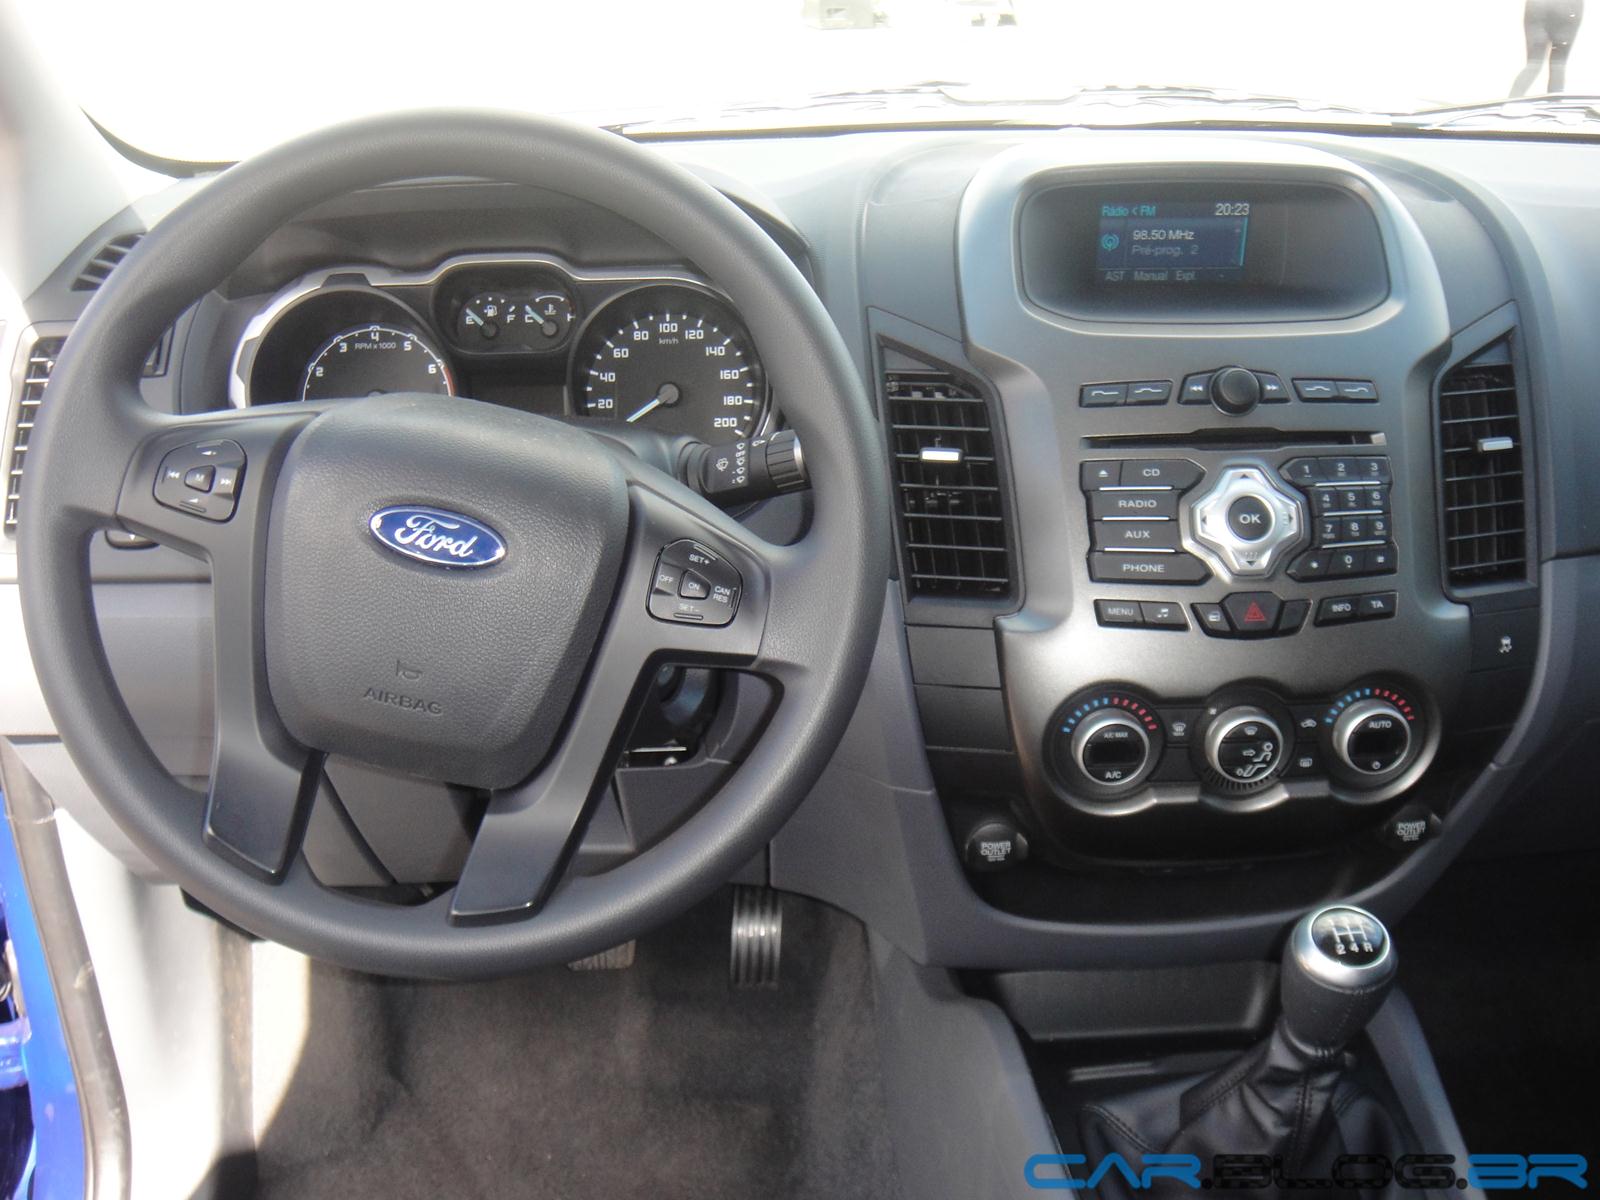 Ford Ranger XLT Cabine Dupla 2.5 Flex: fotos, preços e especificações ...